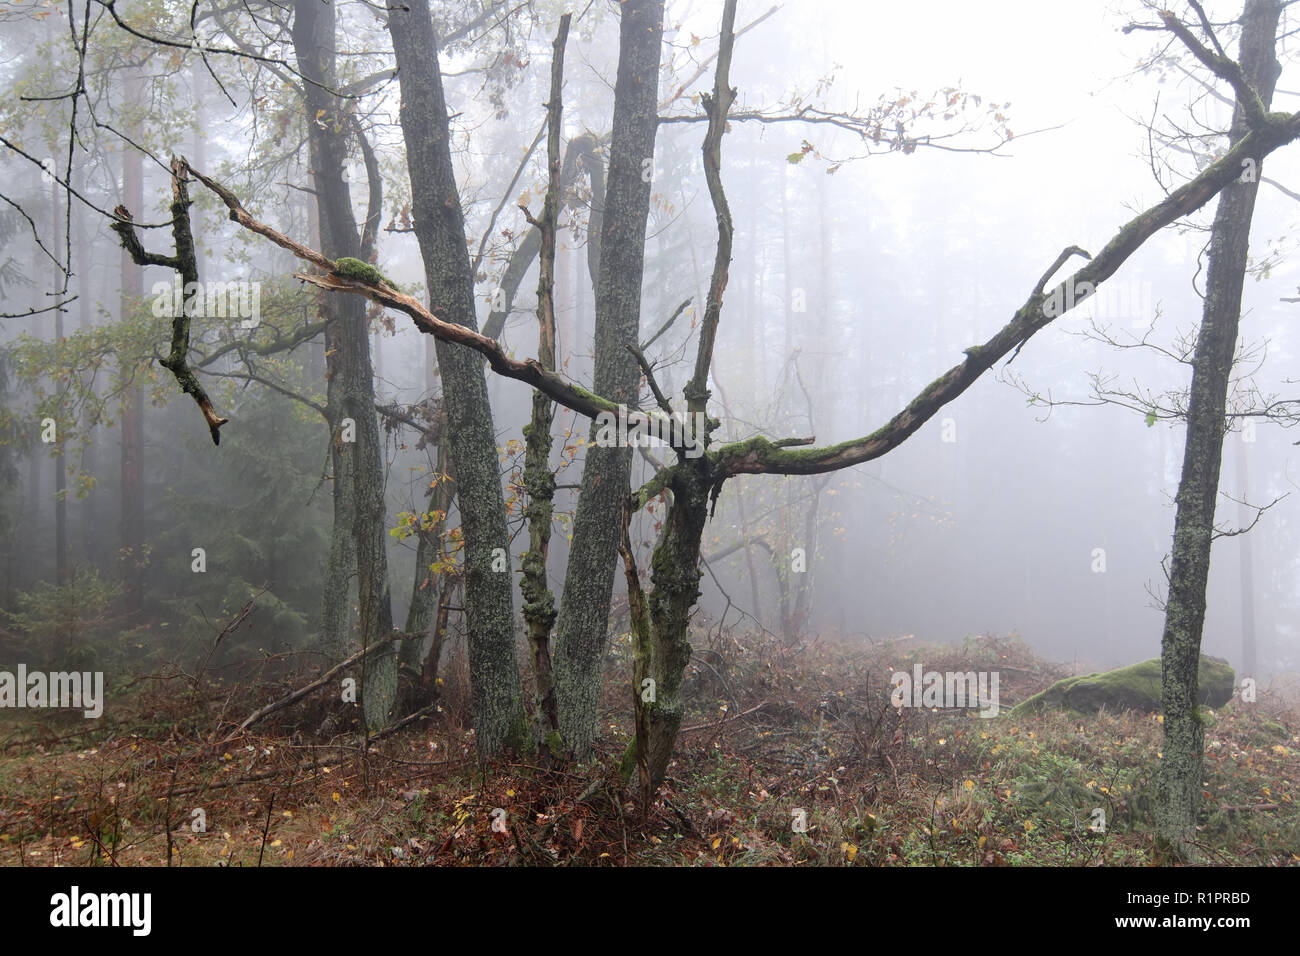 Dans le brouillard automne forêt hantée Banque D'Images